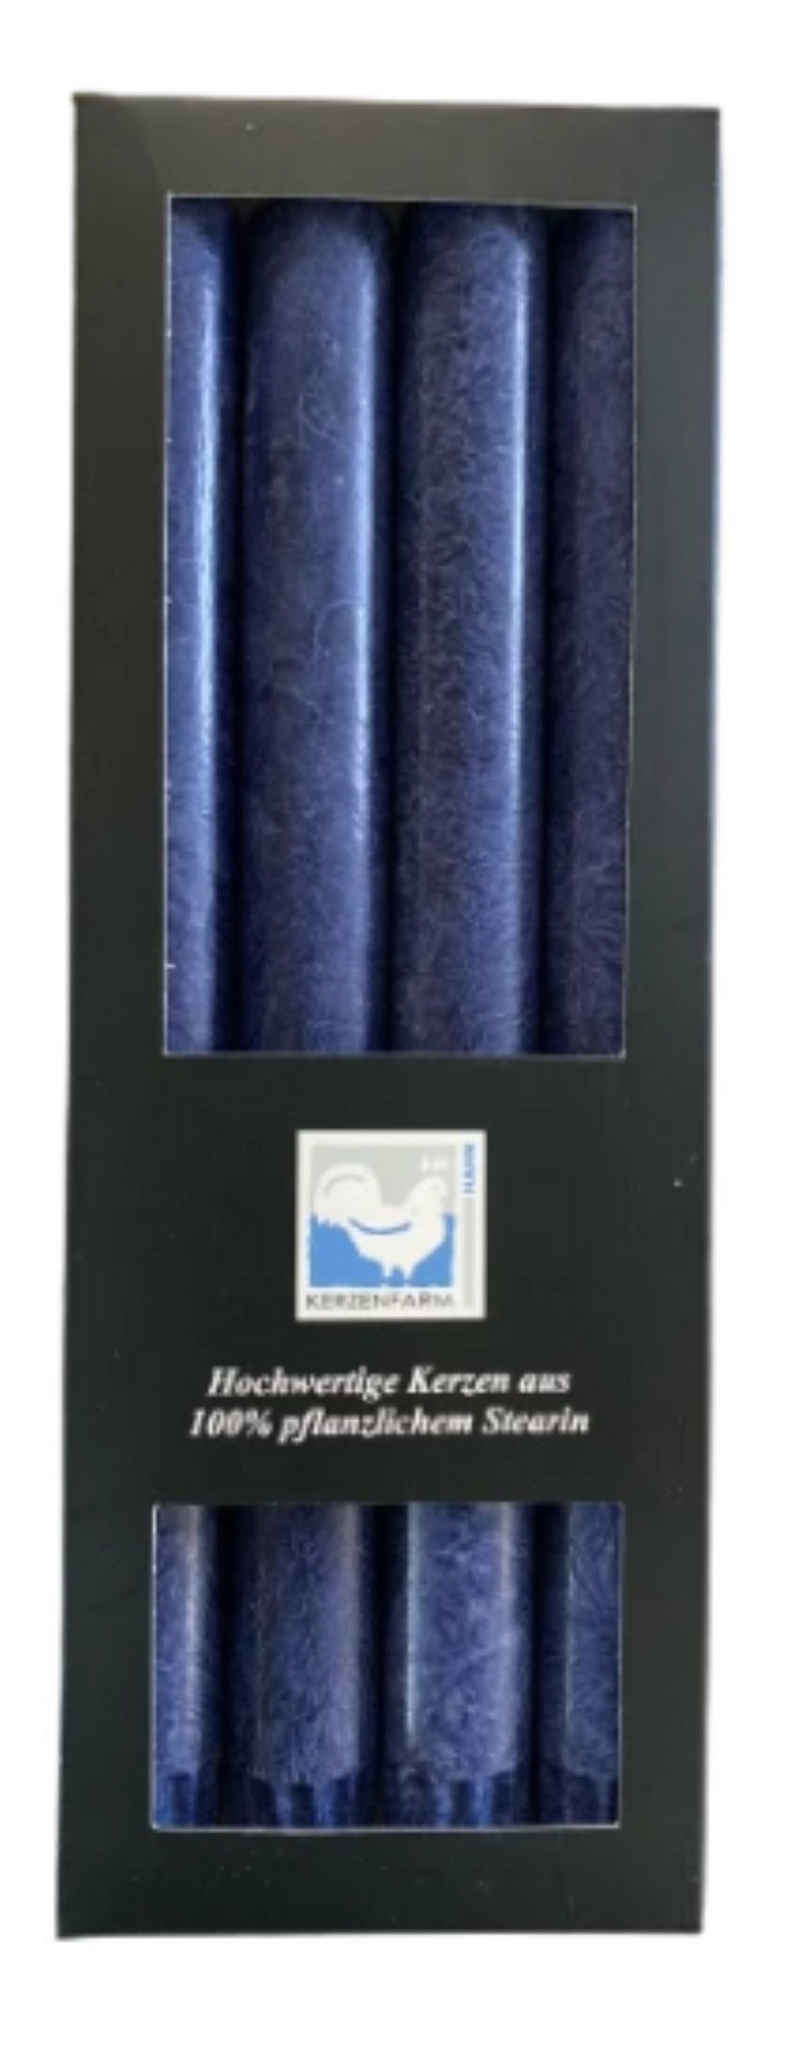 Kerzenfarm Hahn Tafelkerze Stearin-Stabkerze, 4er Pack, 22 x 250 mm, dunkelblau (1-tlg), 100% pflanzliches Stearin